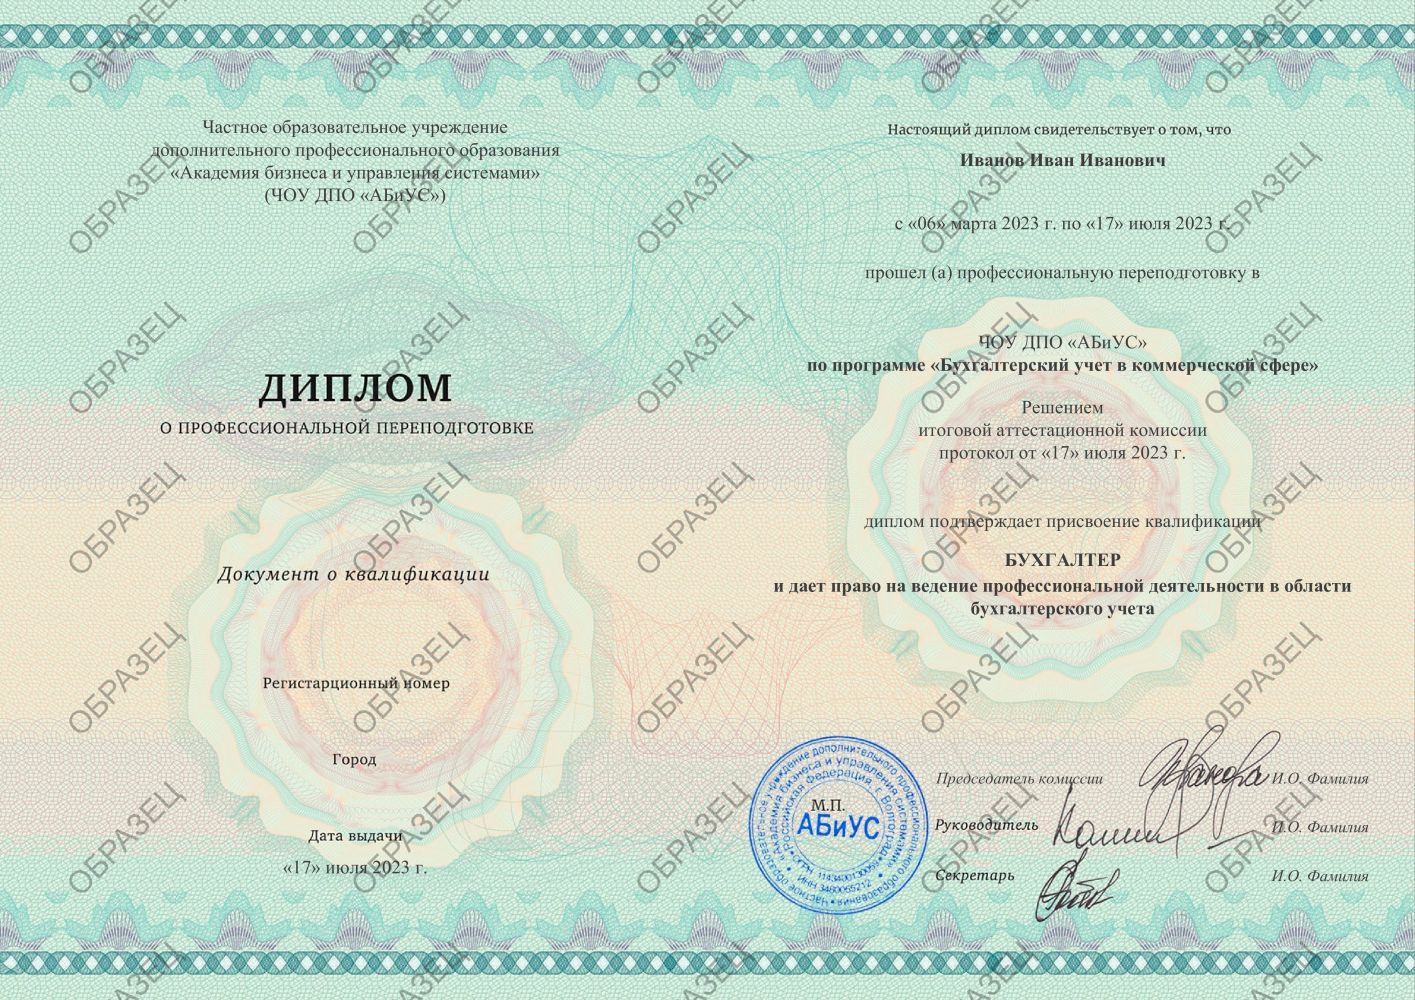 Диплом Бухгалтерский учет в коммерческой сфере 510 часов 18813 руб.